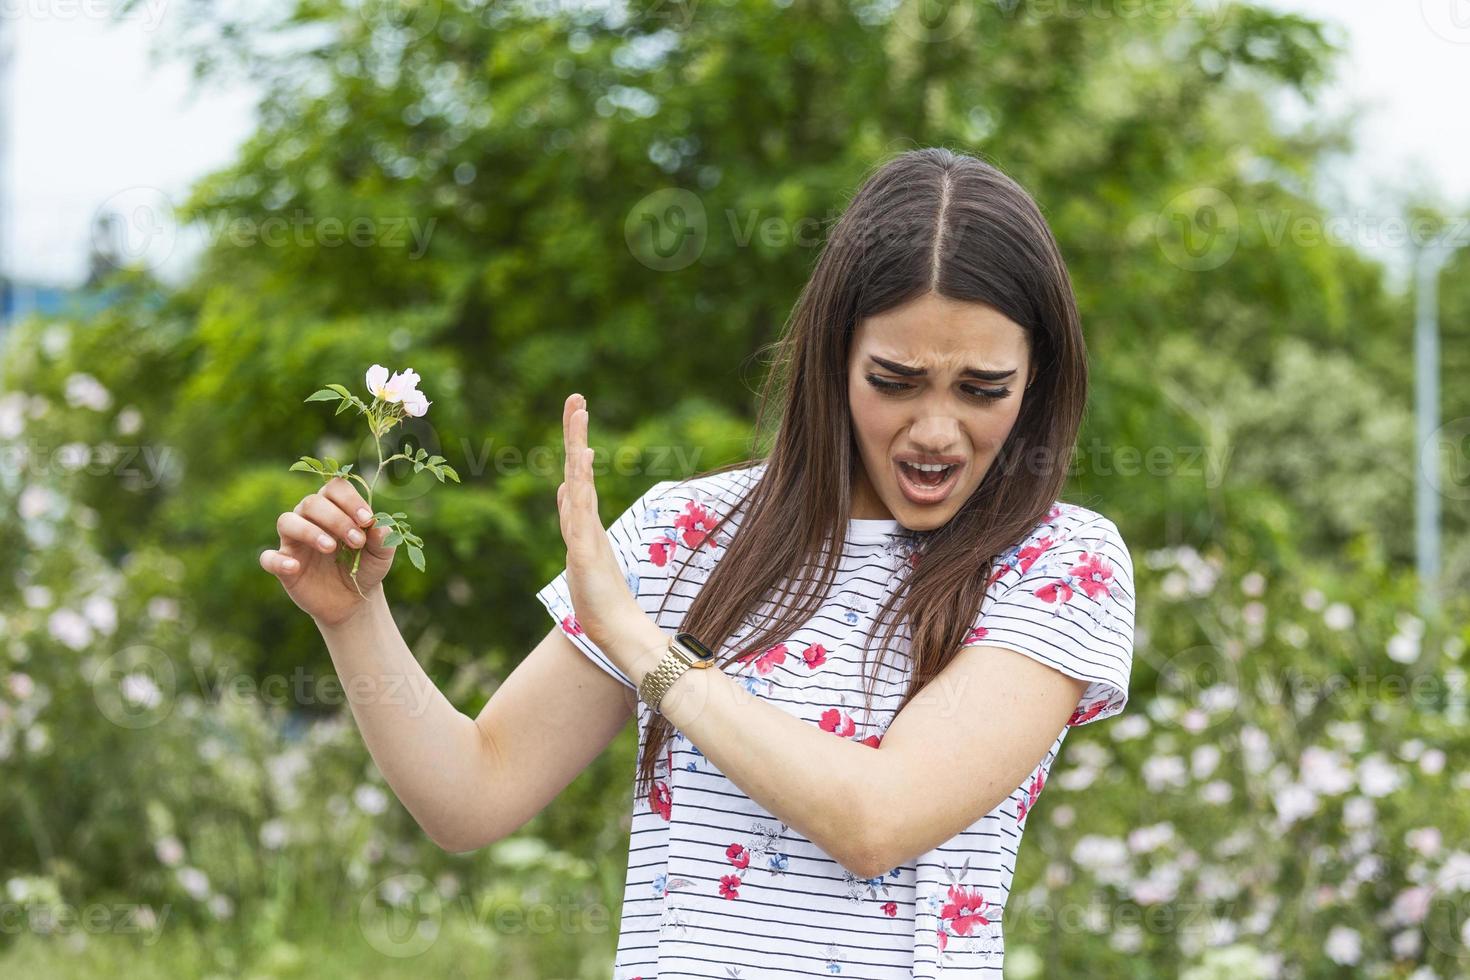 junge Frau mit Pollenallergie, die eine Blume hält und Nein sagt. junge Frau mit Pollen- und Gräserallergie. blühende Bäume im Hintergrund. frühling saisonale allergien und gesundheitliche probleme. foto